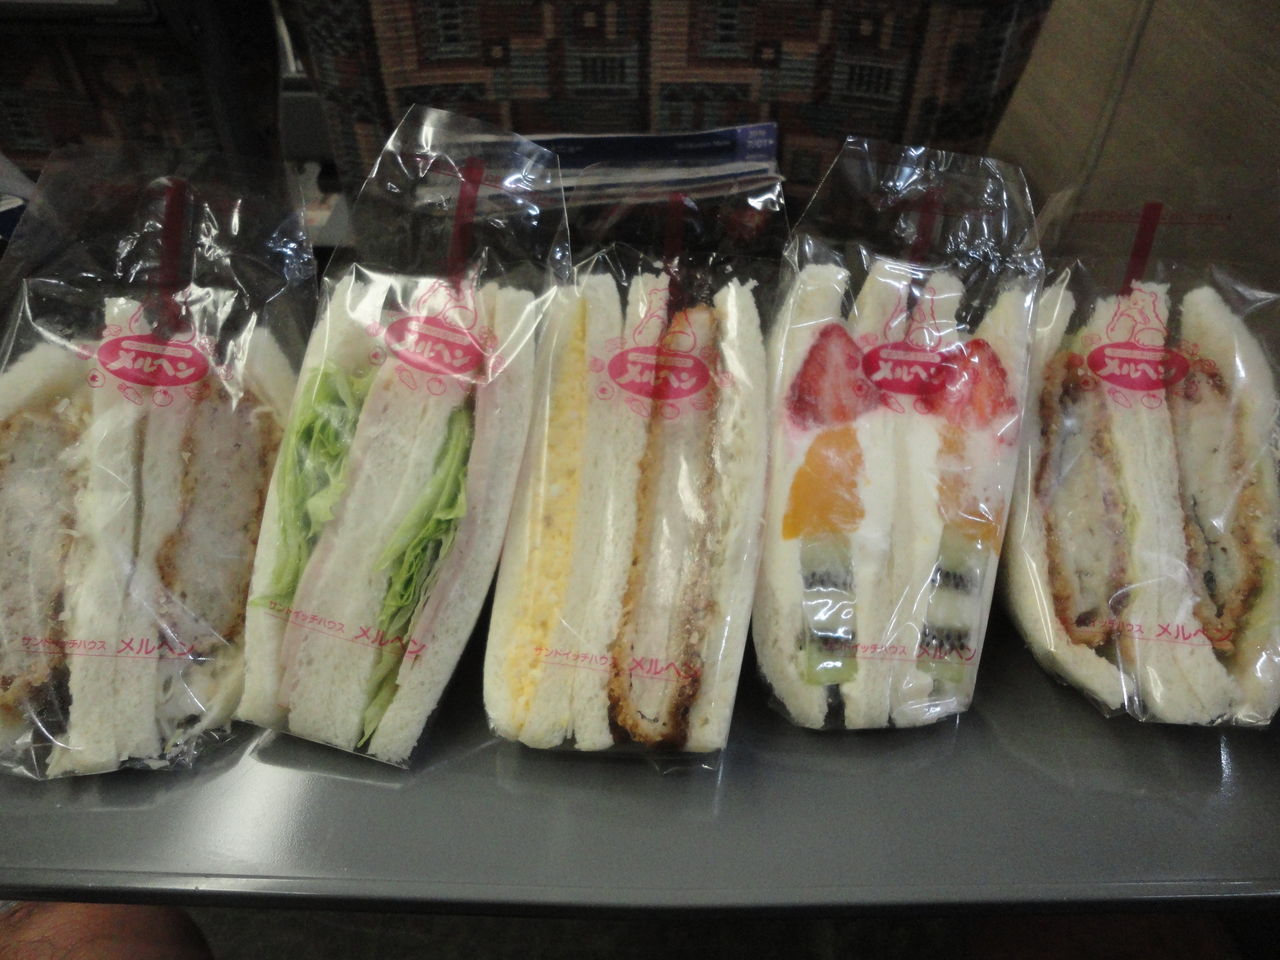 メルヘンのサンドイッチ まずい パサつくパン サンドイッチ屋 大丸東京店 耽溺 マサ青木の美食とクルマ